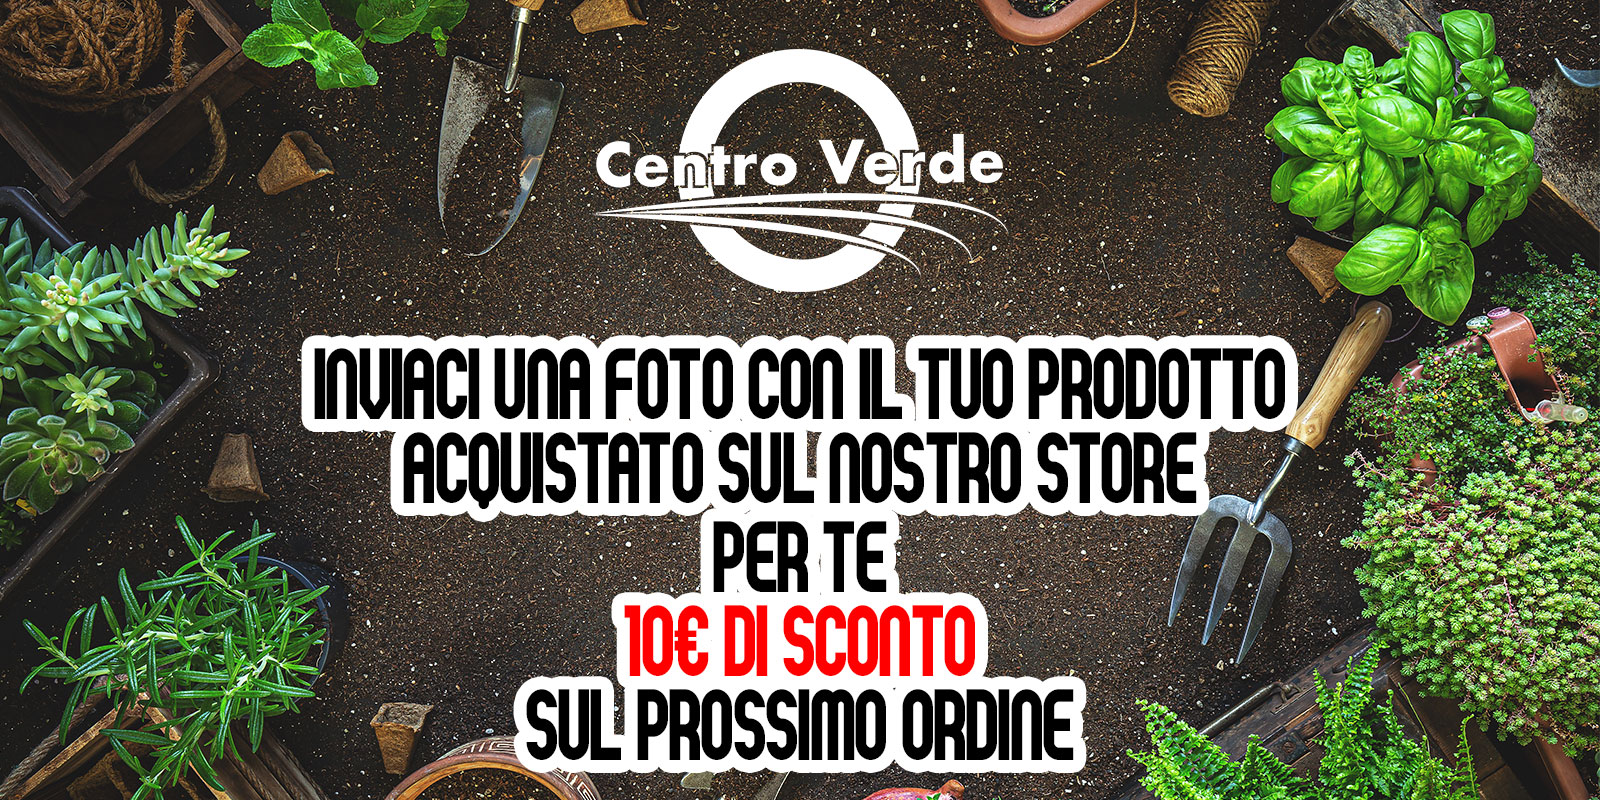 banner promozione Centro Verde Rovigo, sconto 10€ sul prossimo ordine